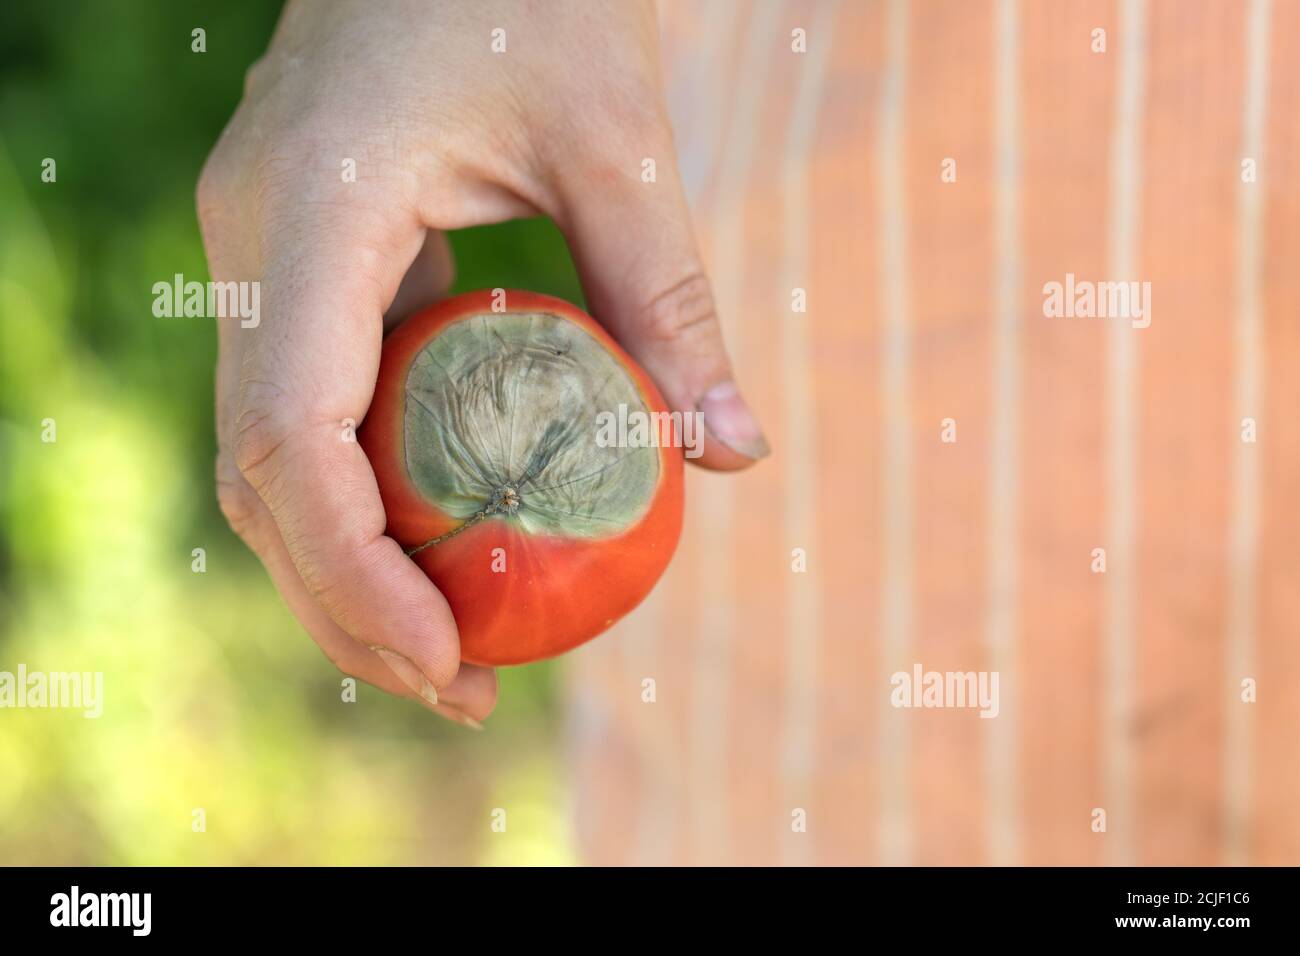 Reife rote Tomate mit verwöhnter Spitze von hellgrüner Fäule In der Hand Stockfoto